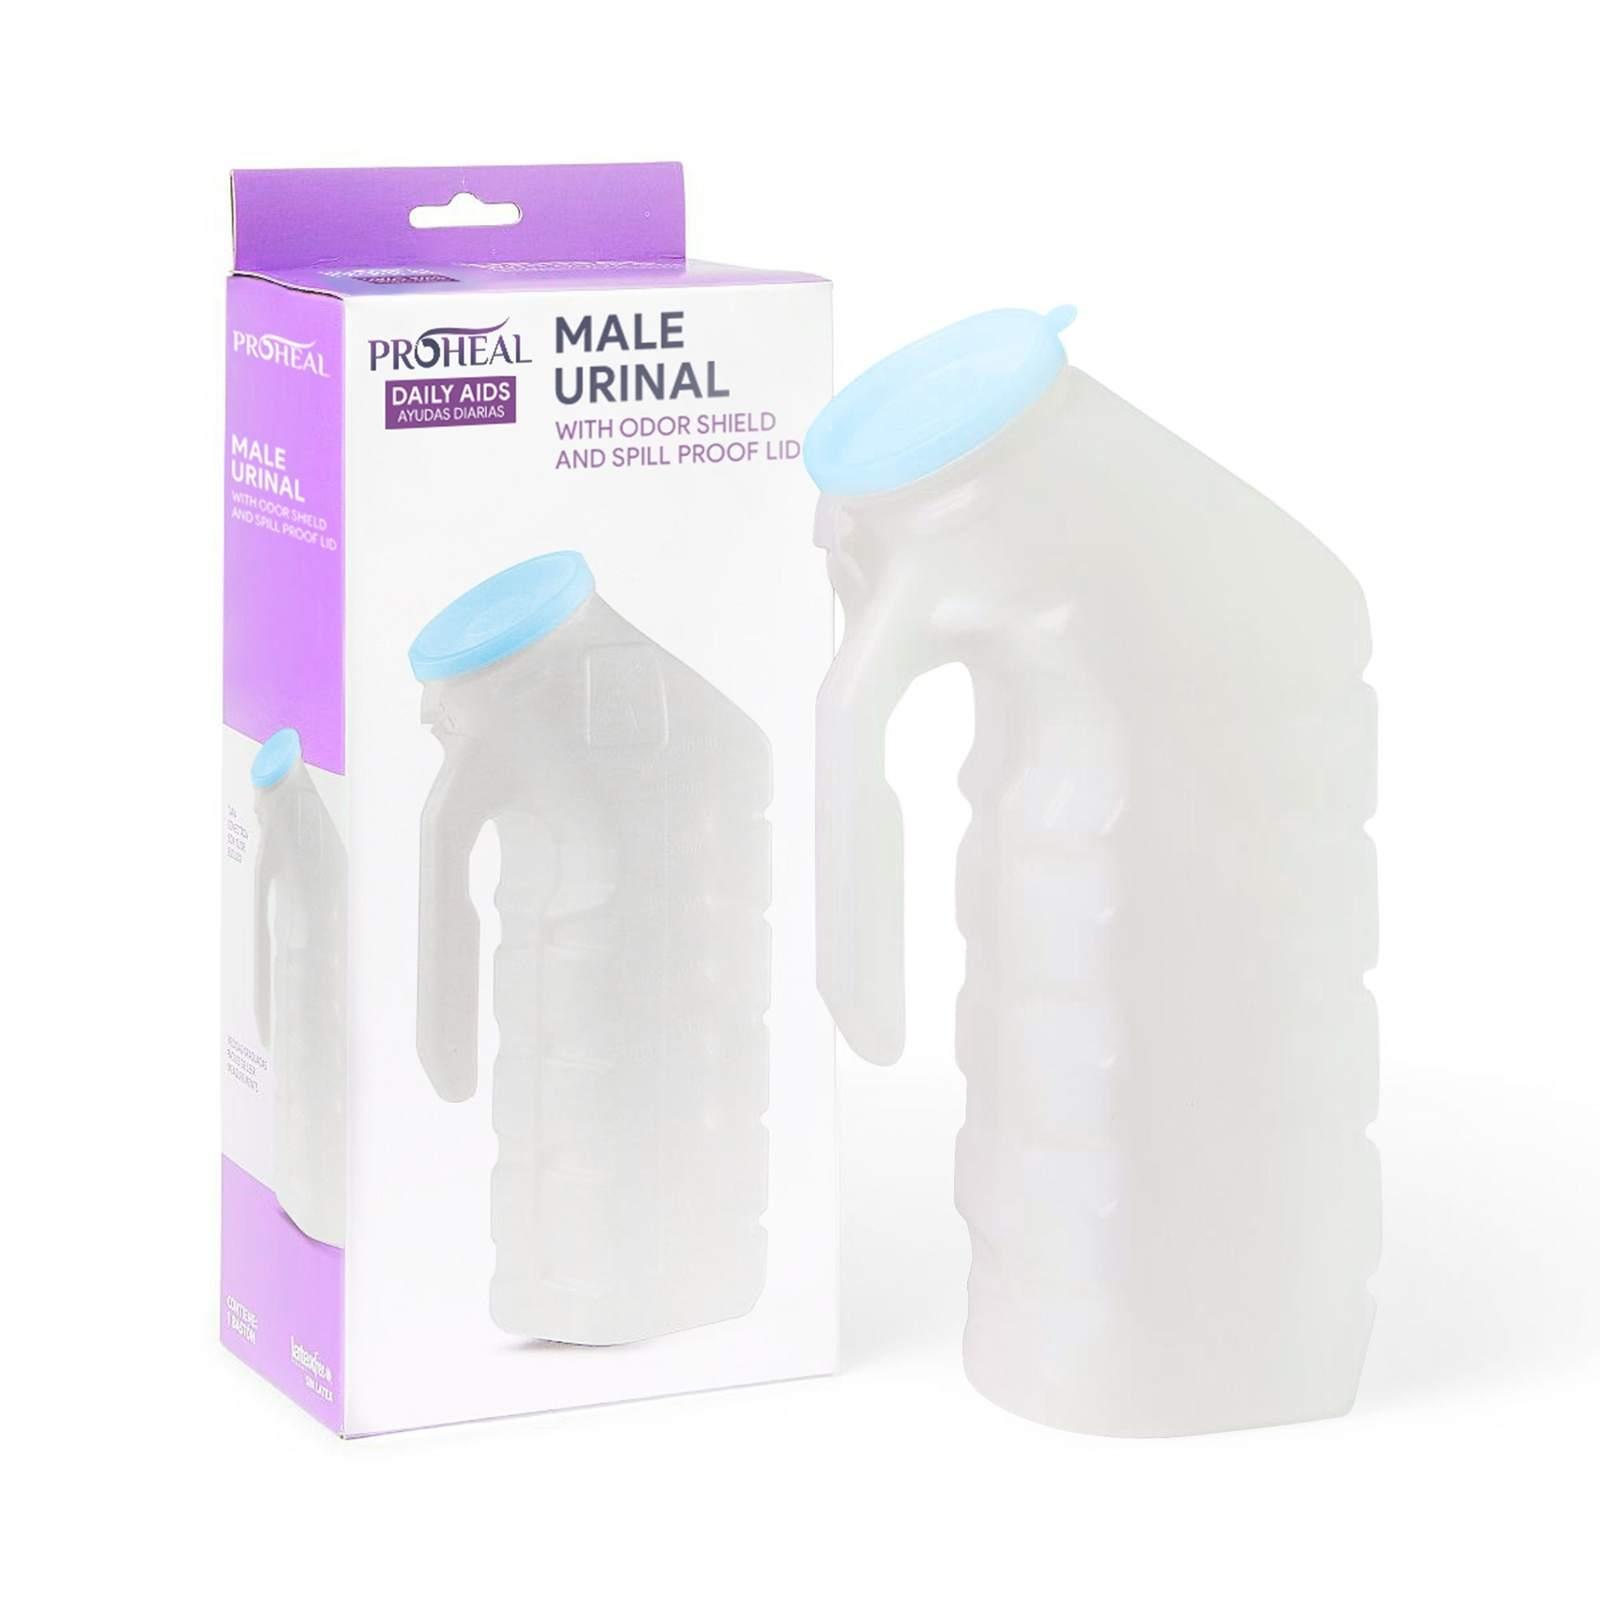 Urinarios portátiles ProHeal para hombres - Botella de orinal masculina con  tapa hermética que brilla en la oscuridad — ProHeal-Products